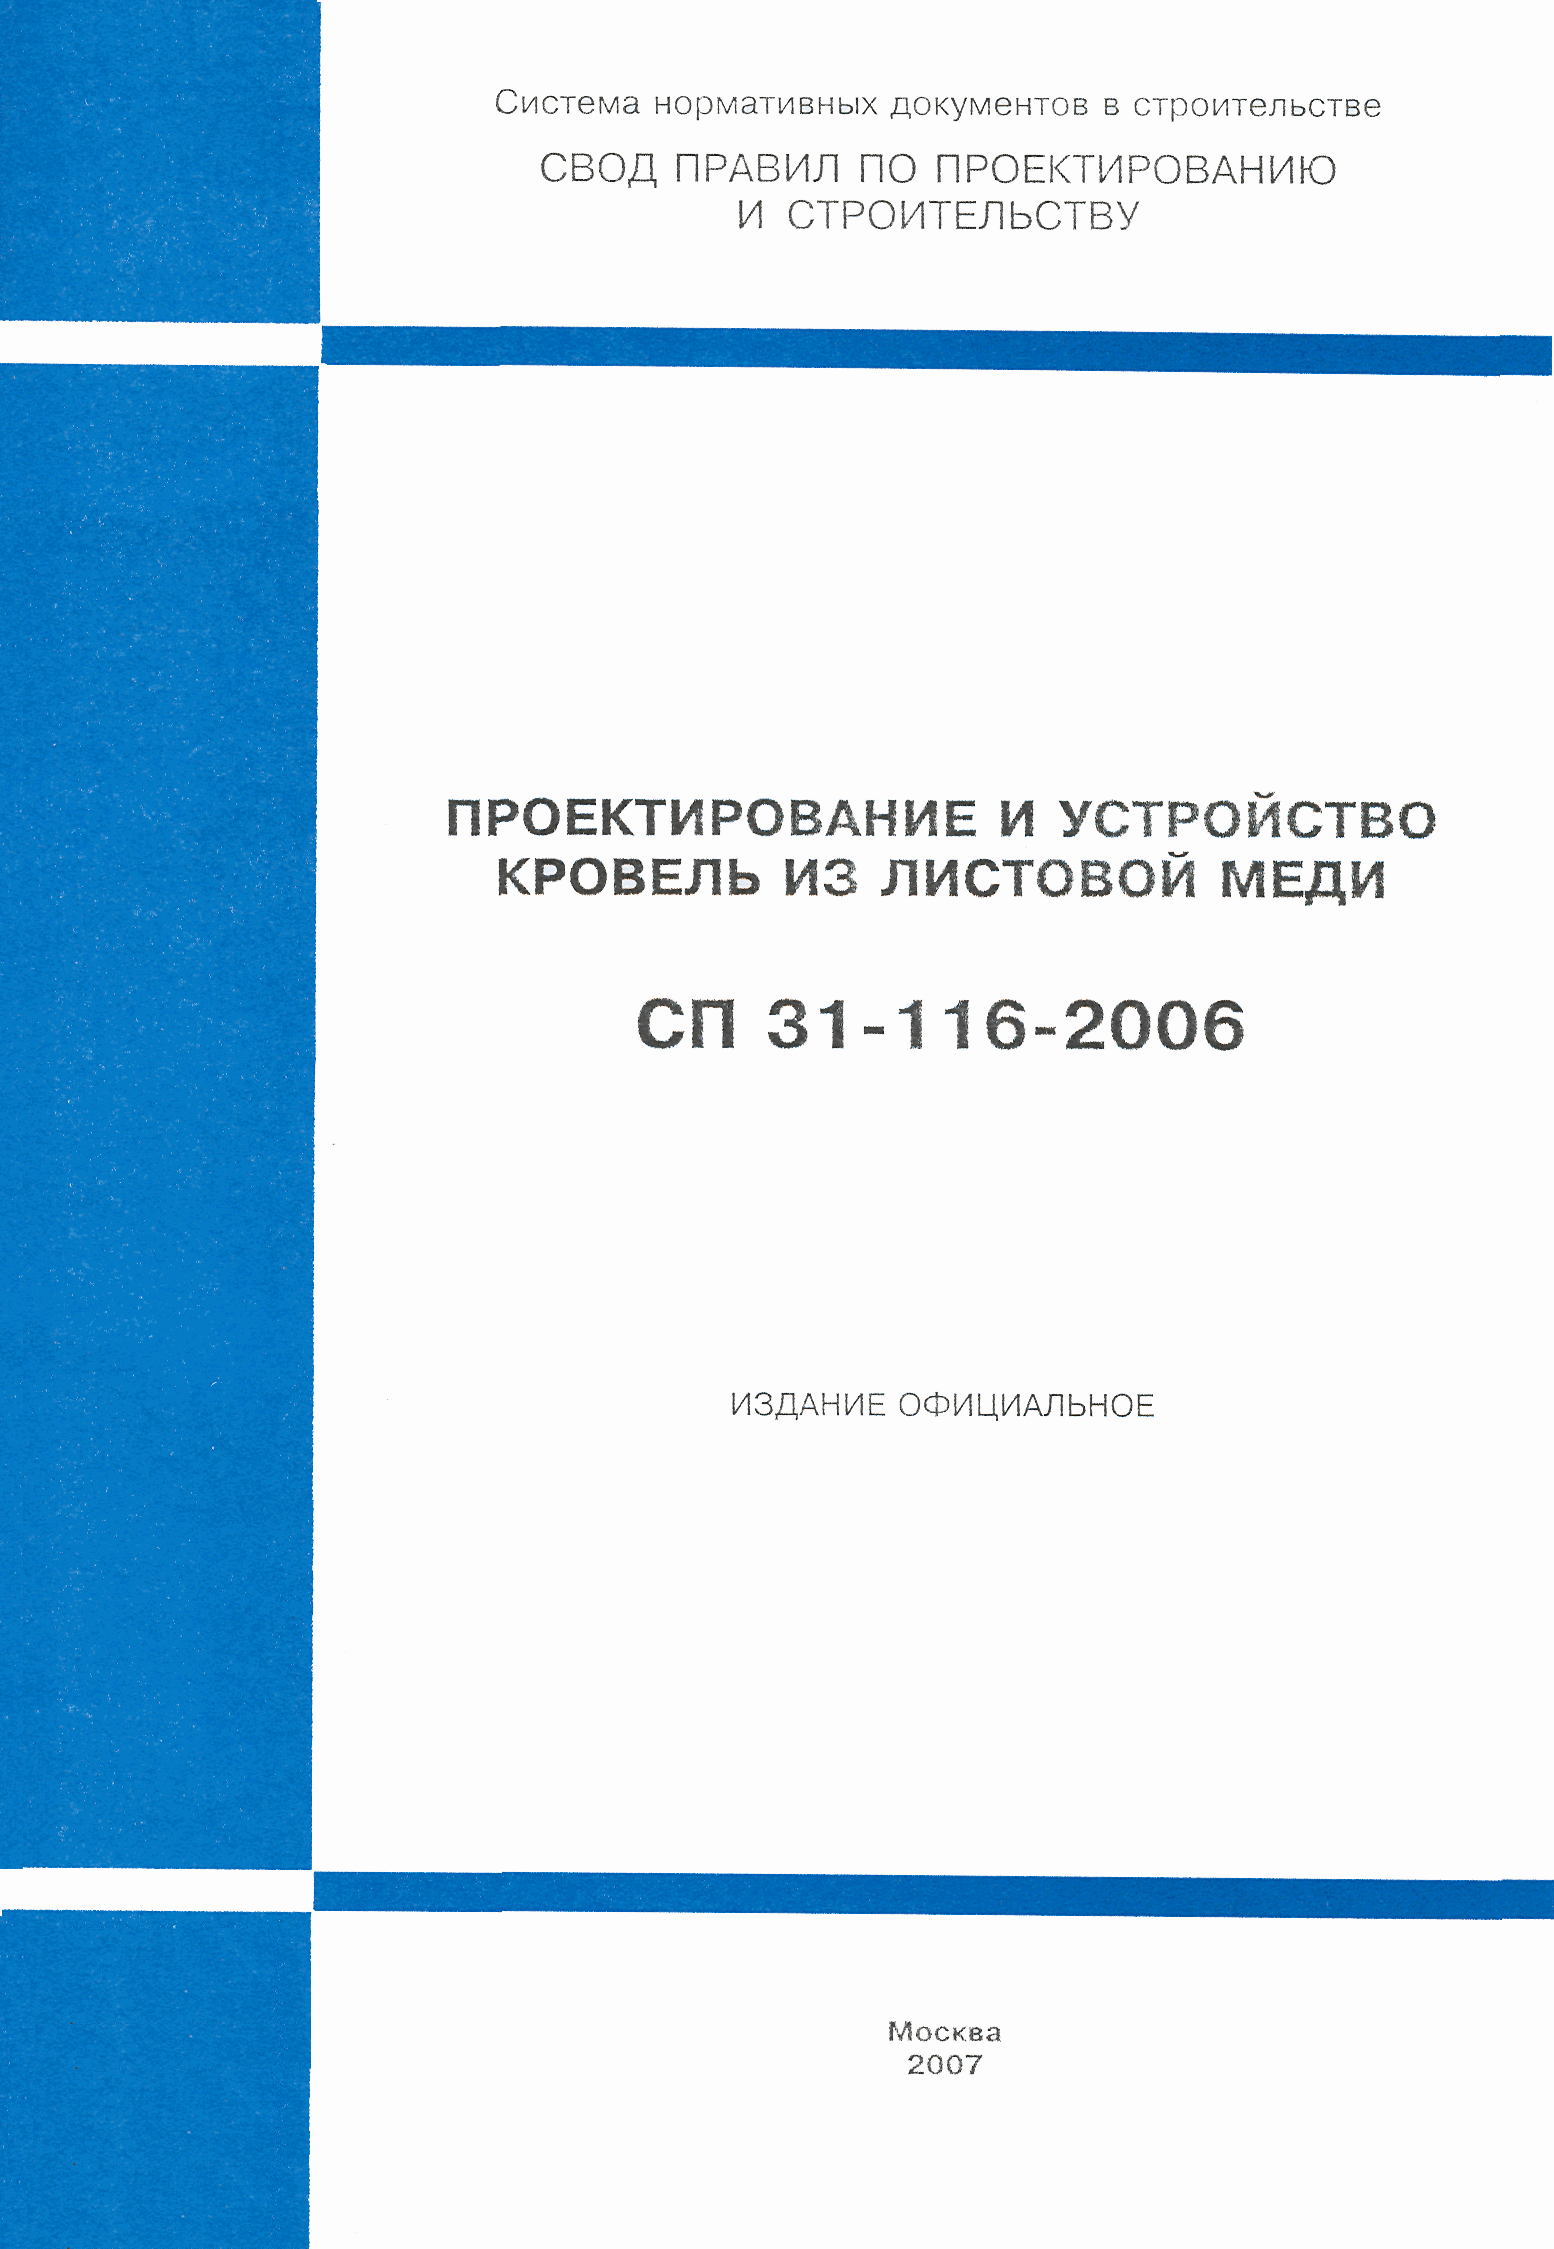 СП 31-116-2006